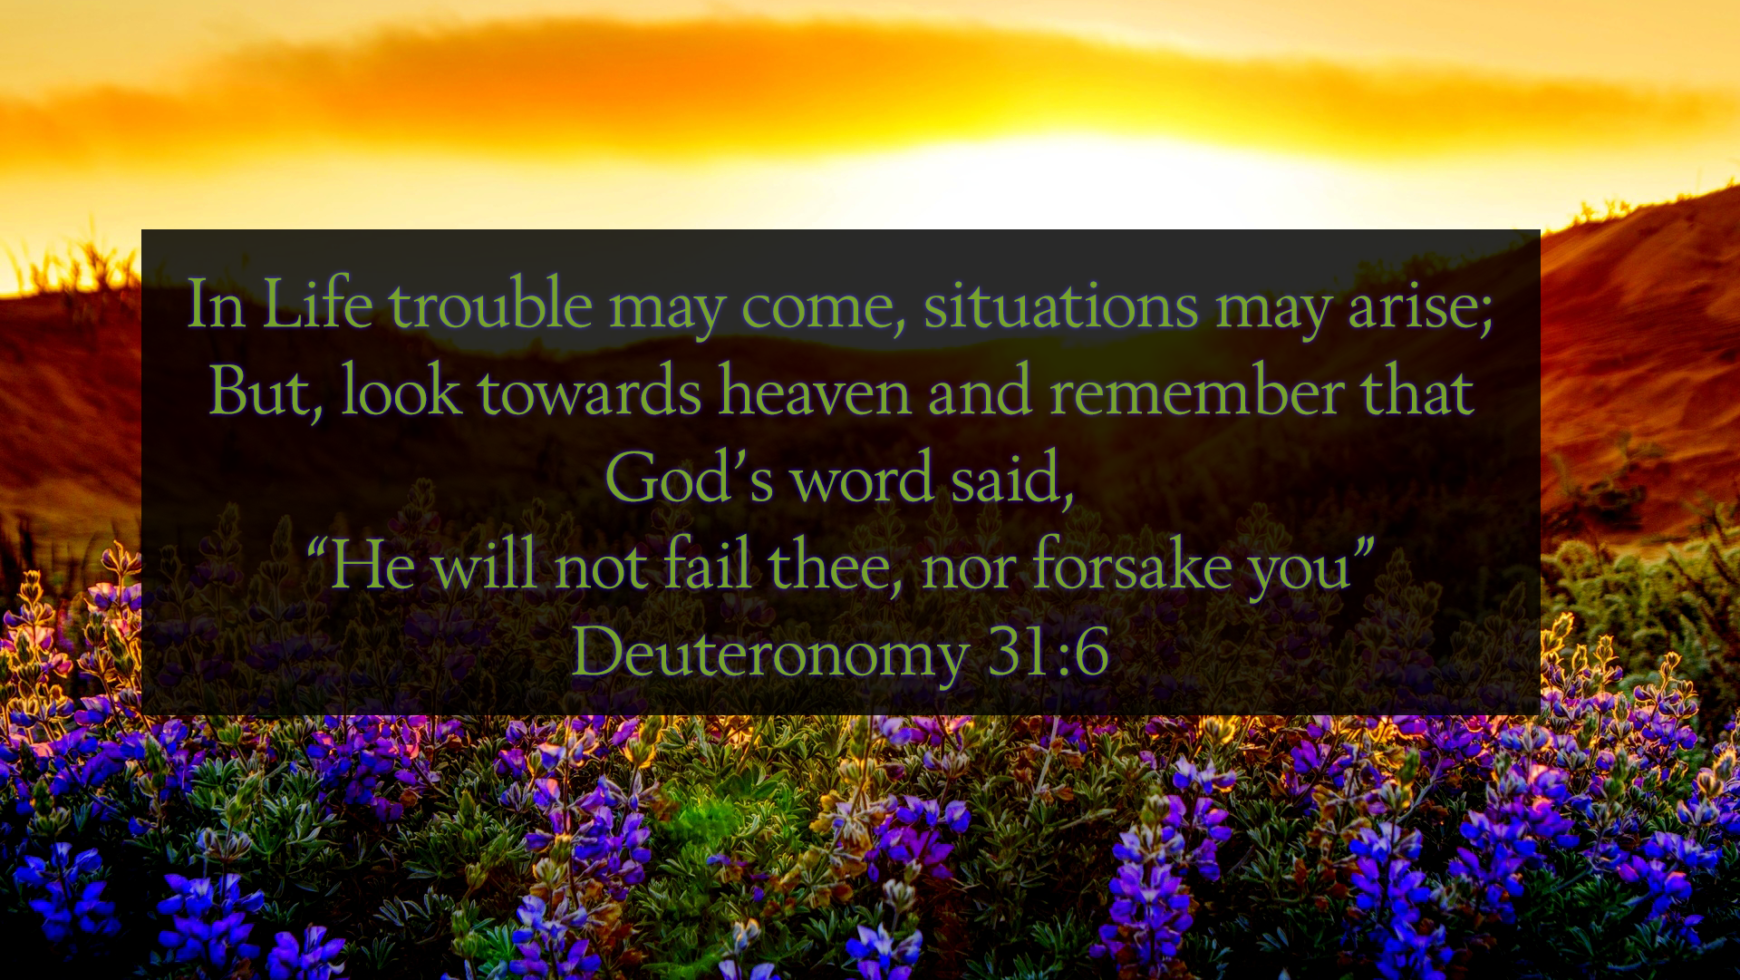 4/18 – Deuteronomy 31:6